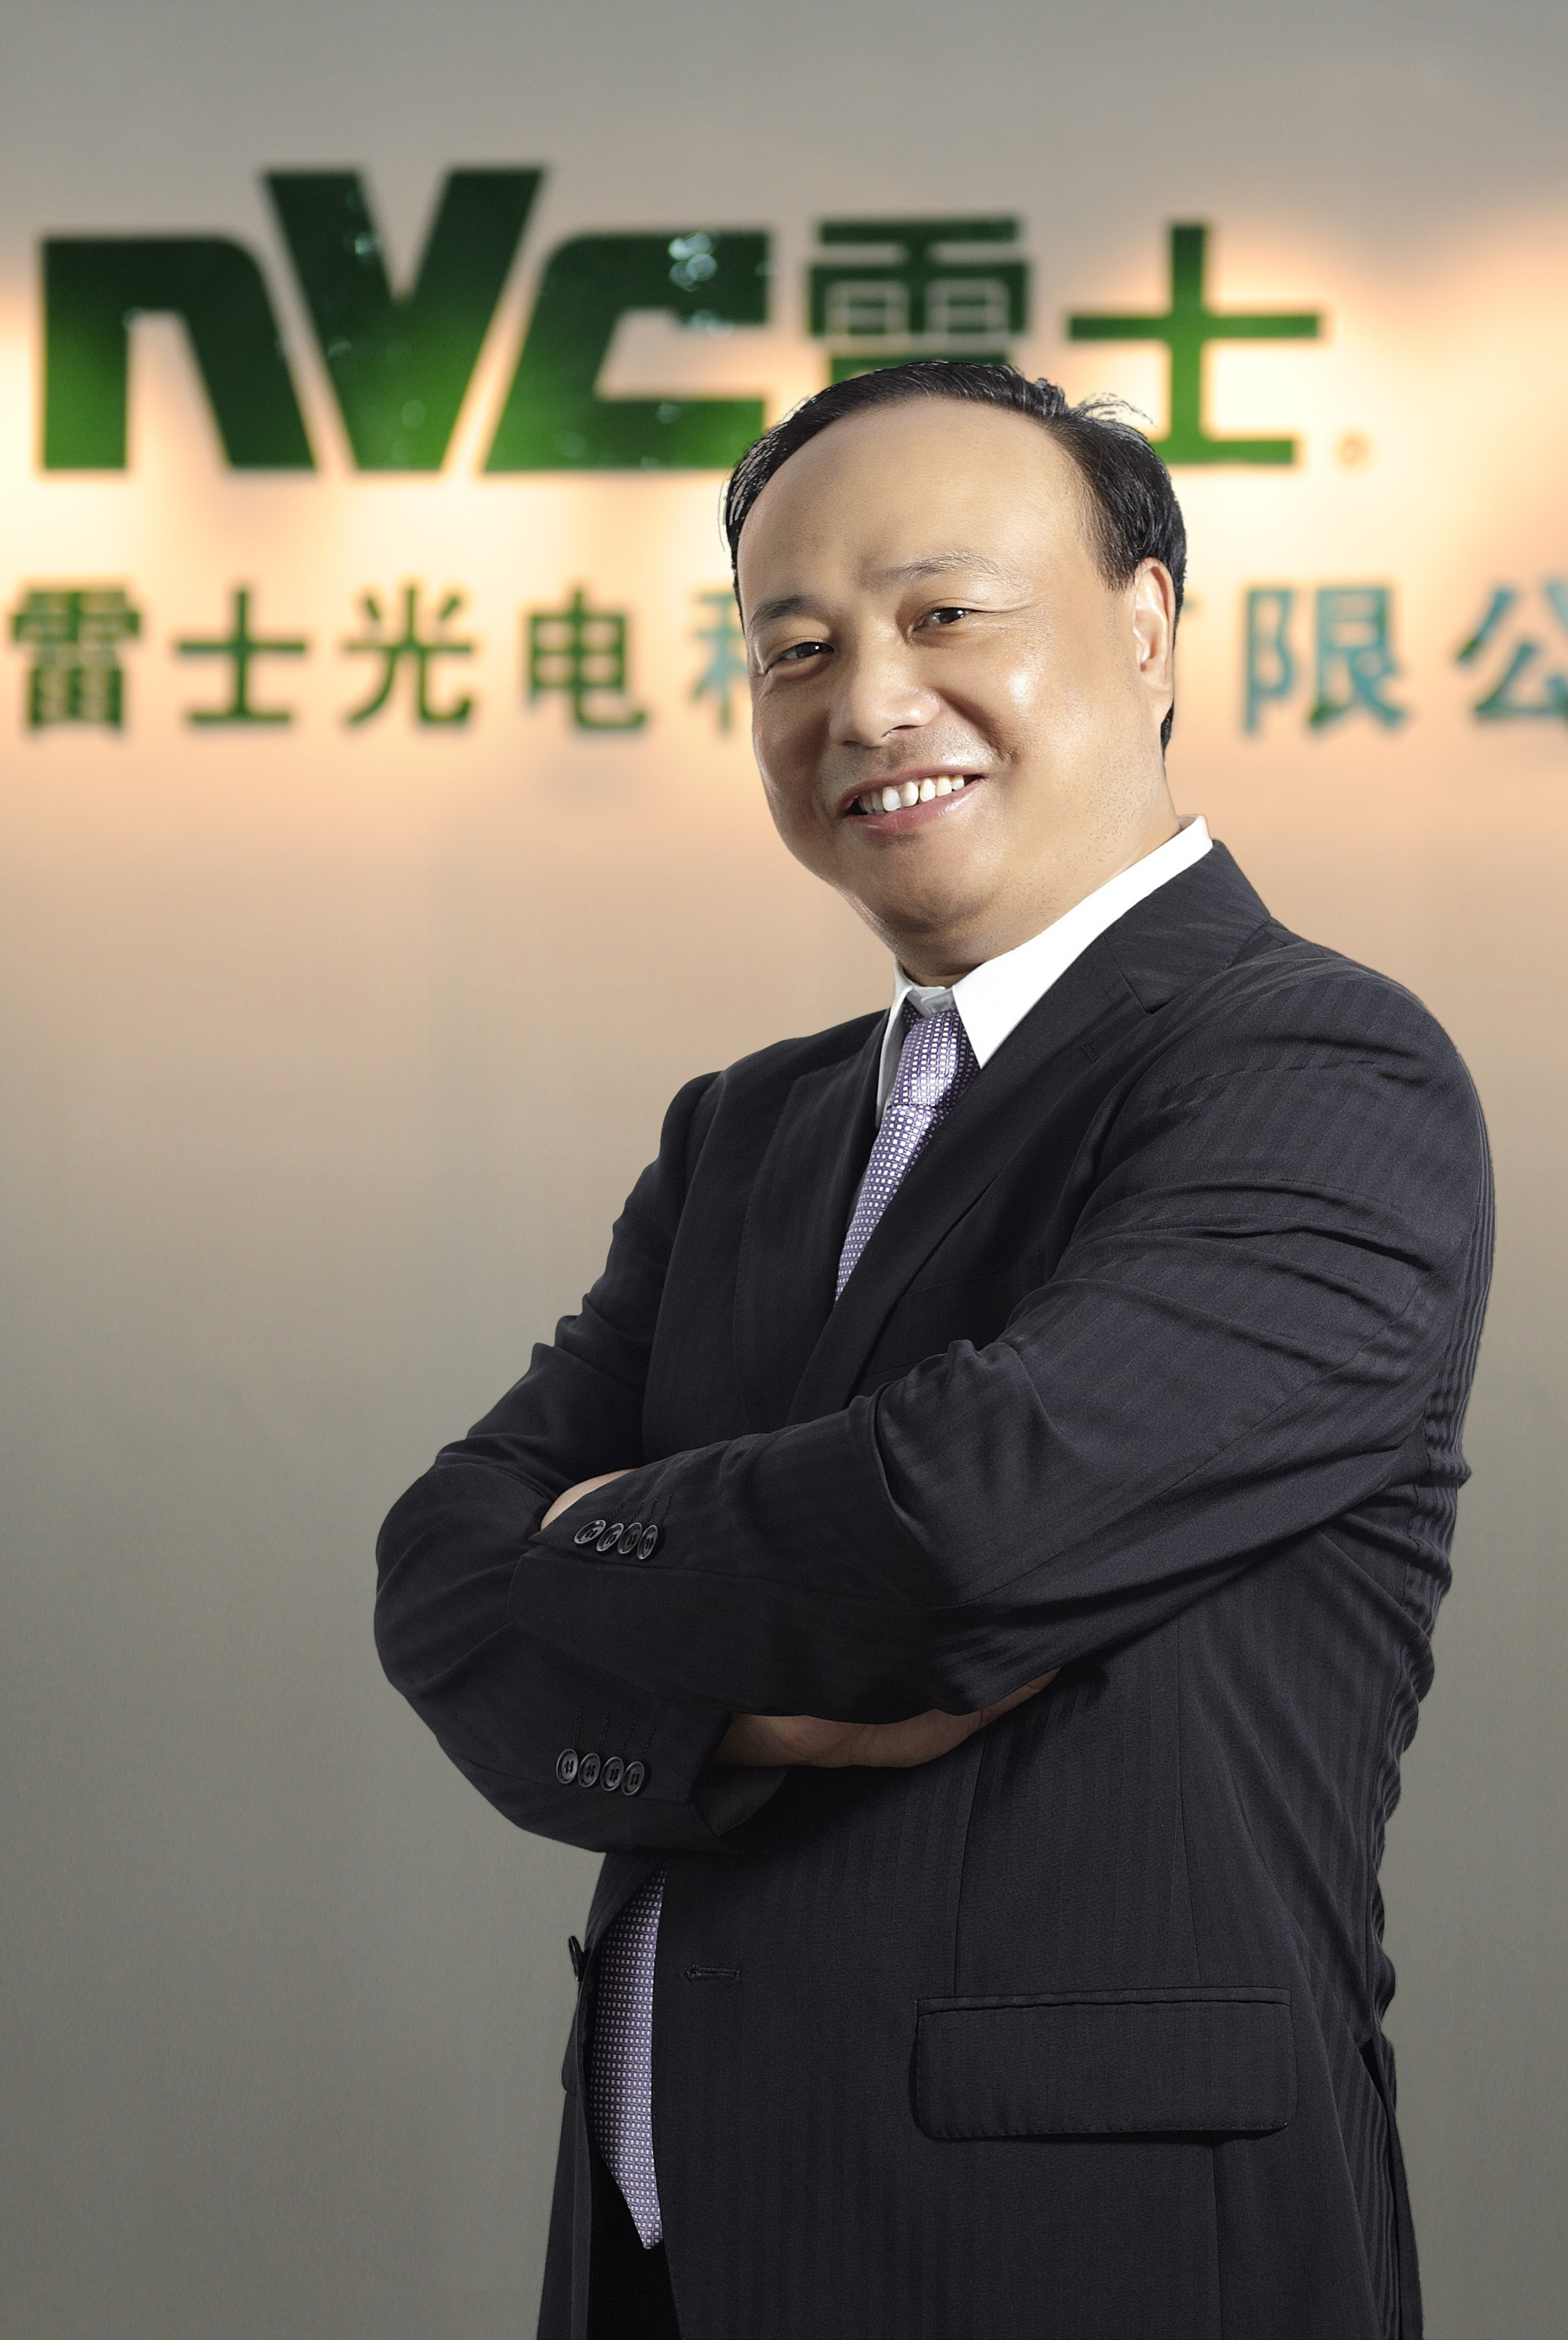 喜报雷士集团董事长王冬雷入选中国照明行业70年70人名单